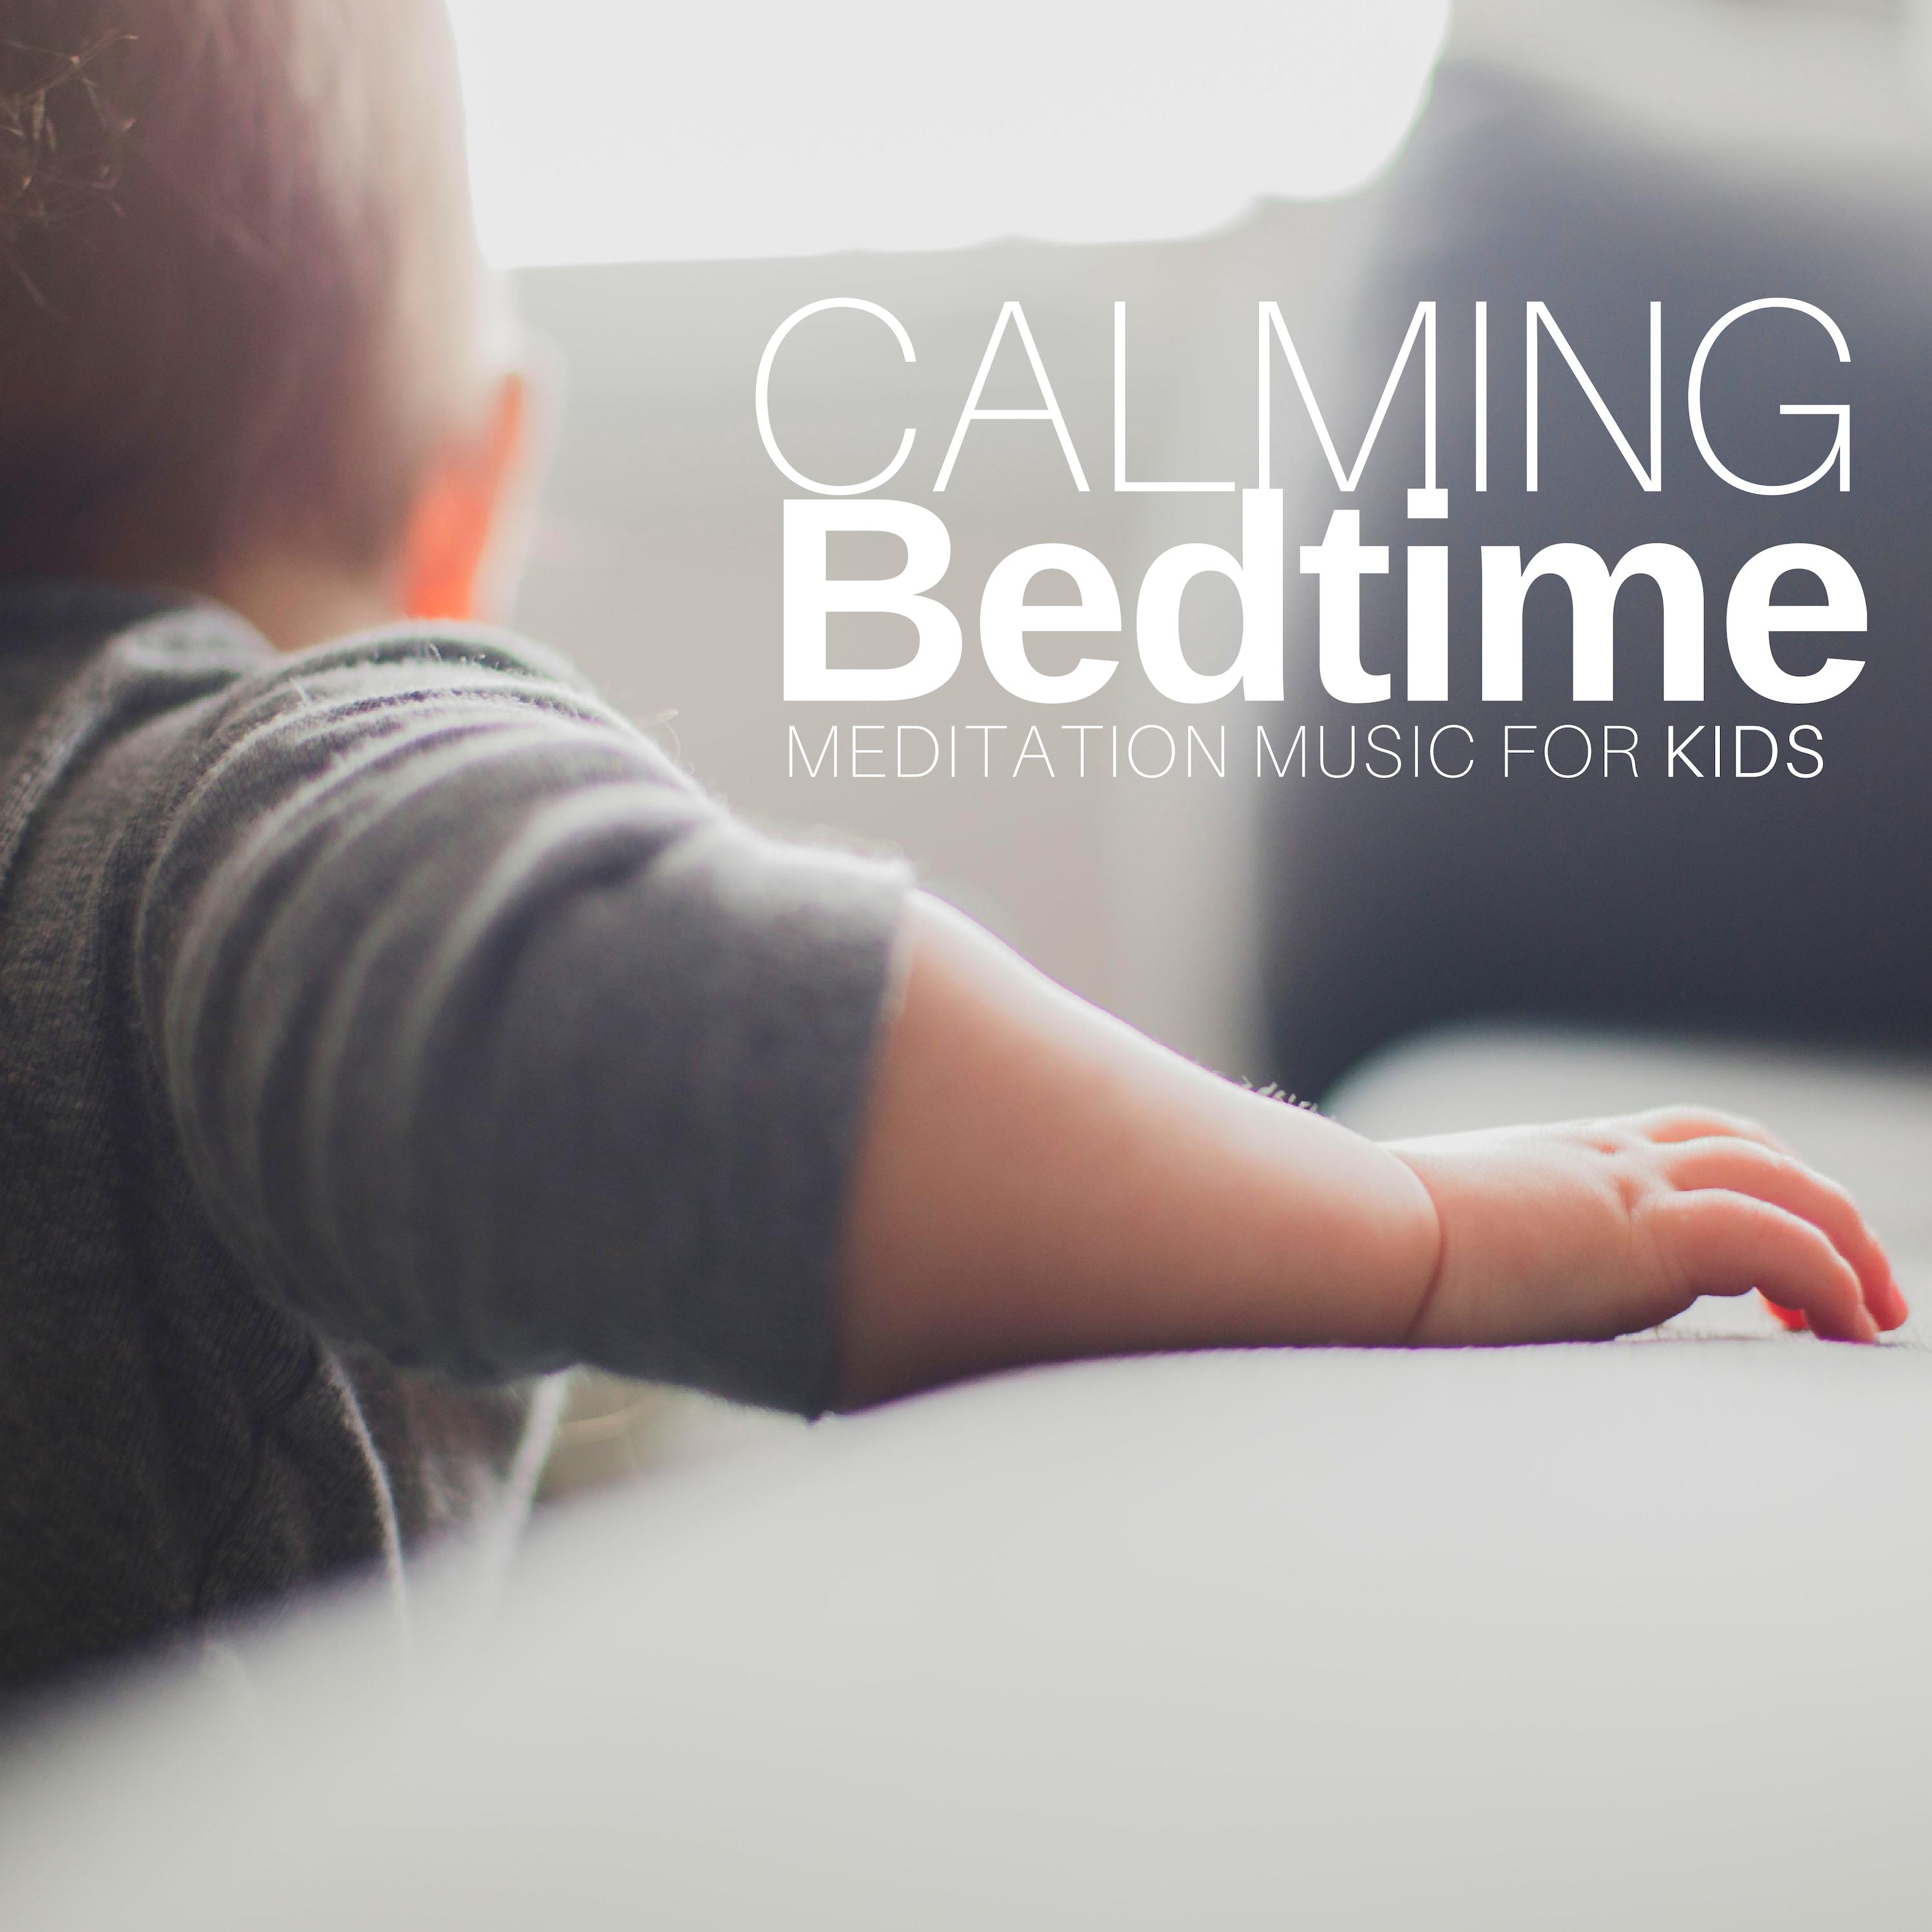 Calming Bedtime Meditation Music for Kids